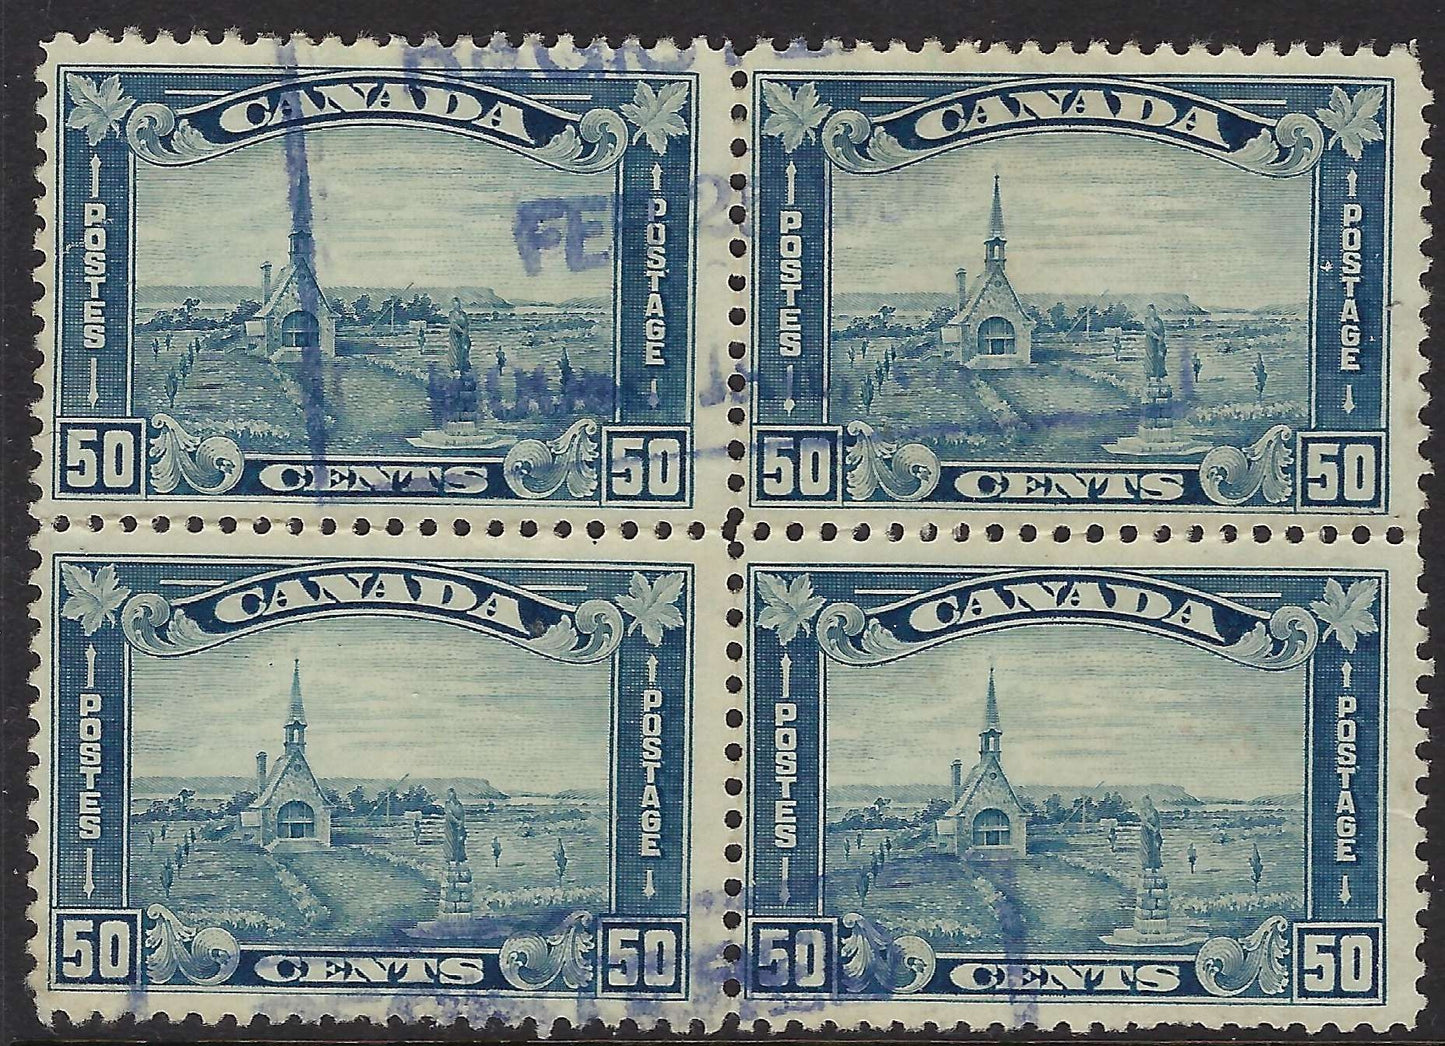 Canada 176 - Used 50¢ Grand Pre Block of 4